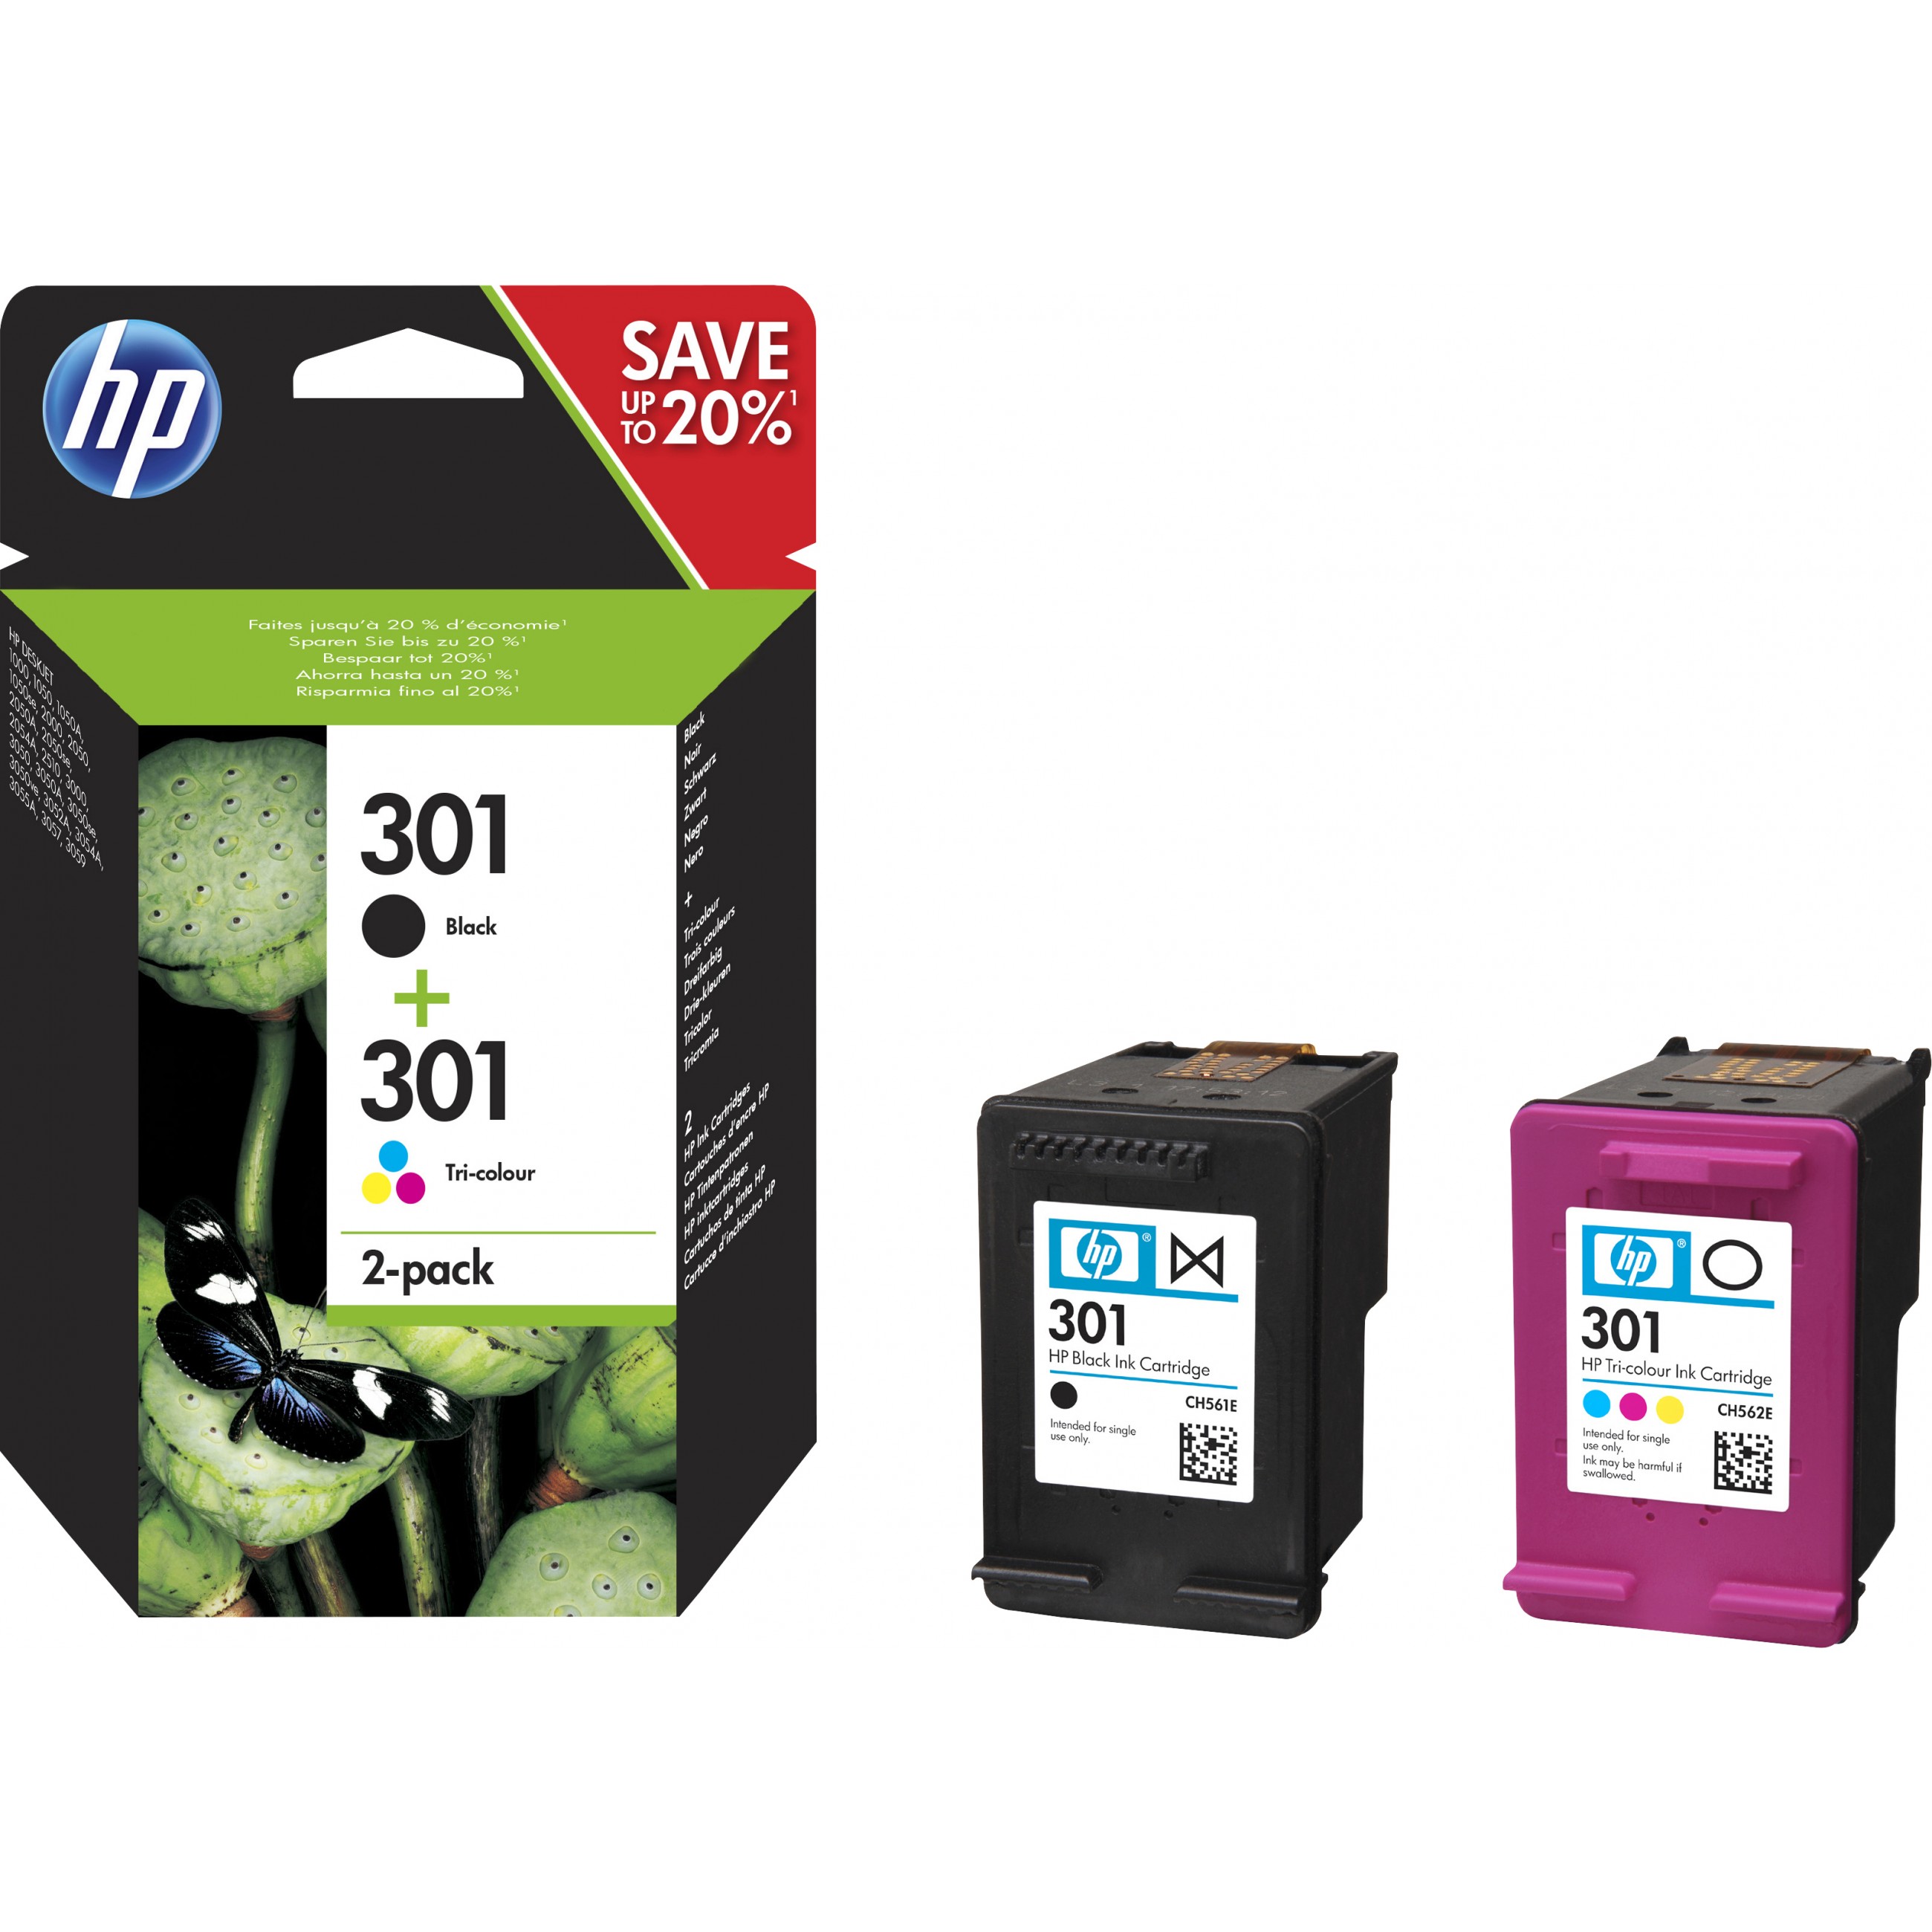 HP 301 2-pack Black/Tri-color Original Ink Cartridges ink cartridge - N9J72AE